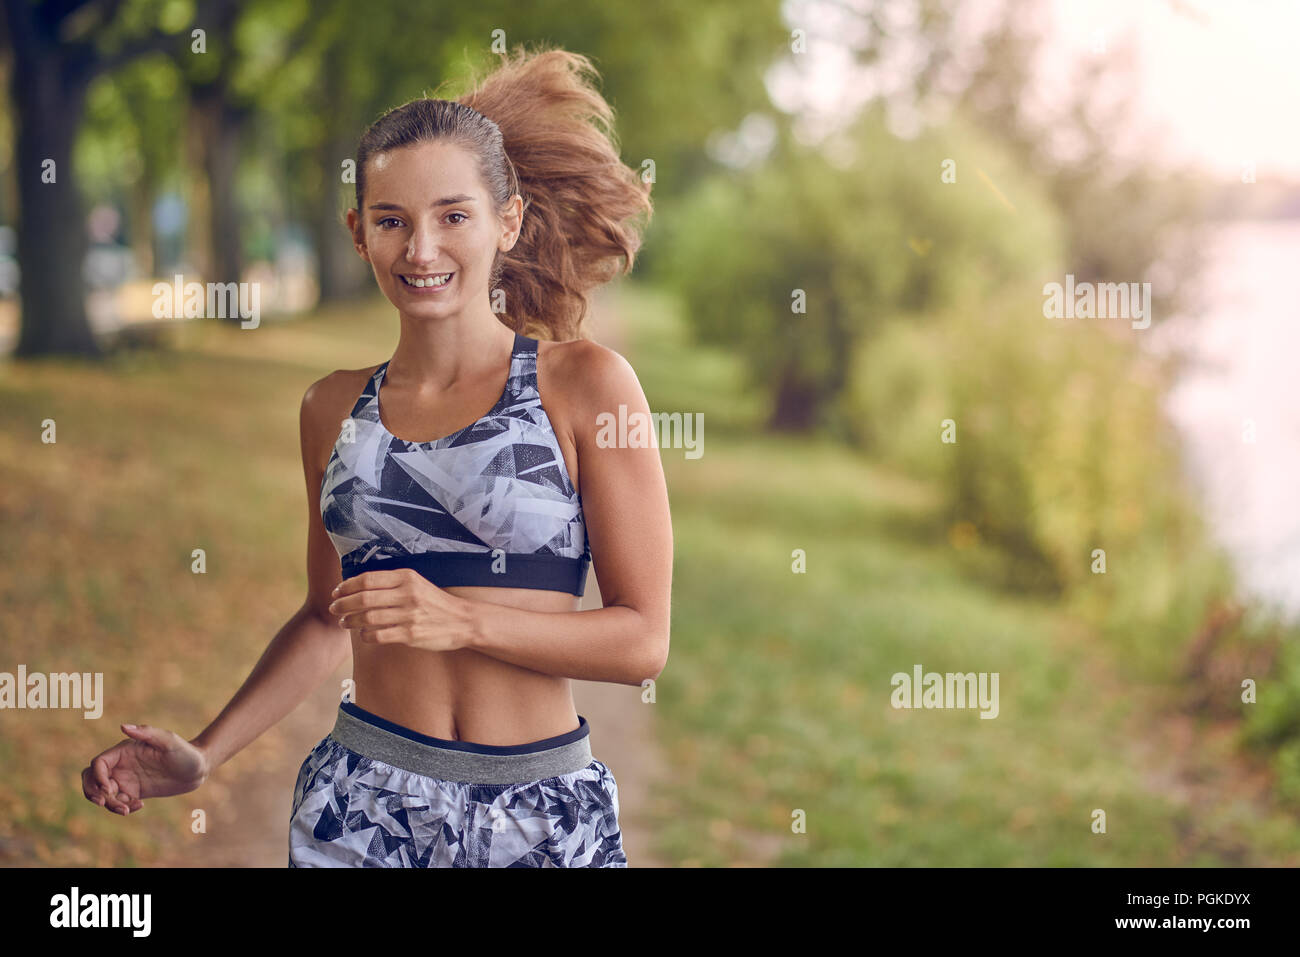 Fit gesund athletische Frau Joggen an einem Flussufer glücklich lächelnd mit Ihren langen Haare hinter ihr fliegen wie Sie nähert sich die Kamera Stockfoto